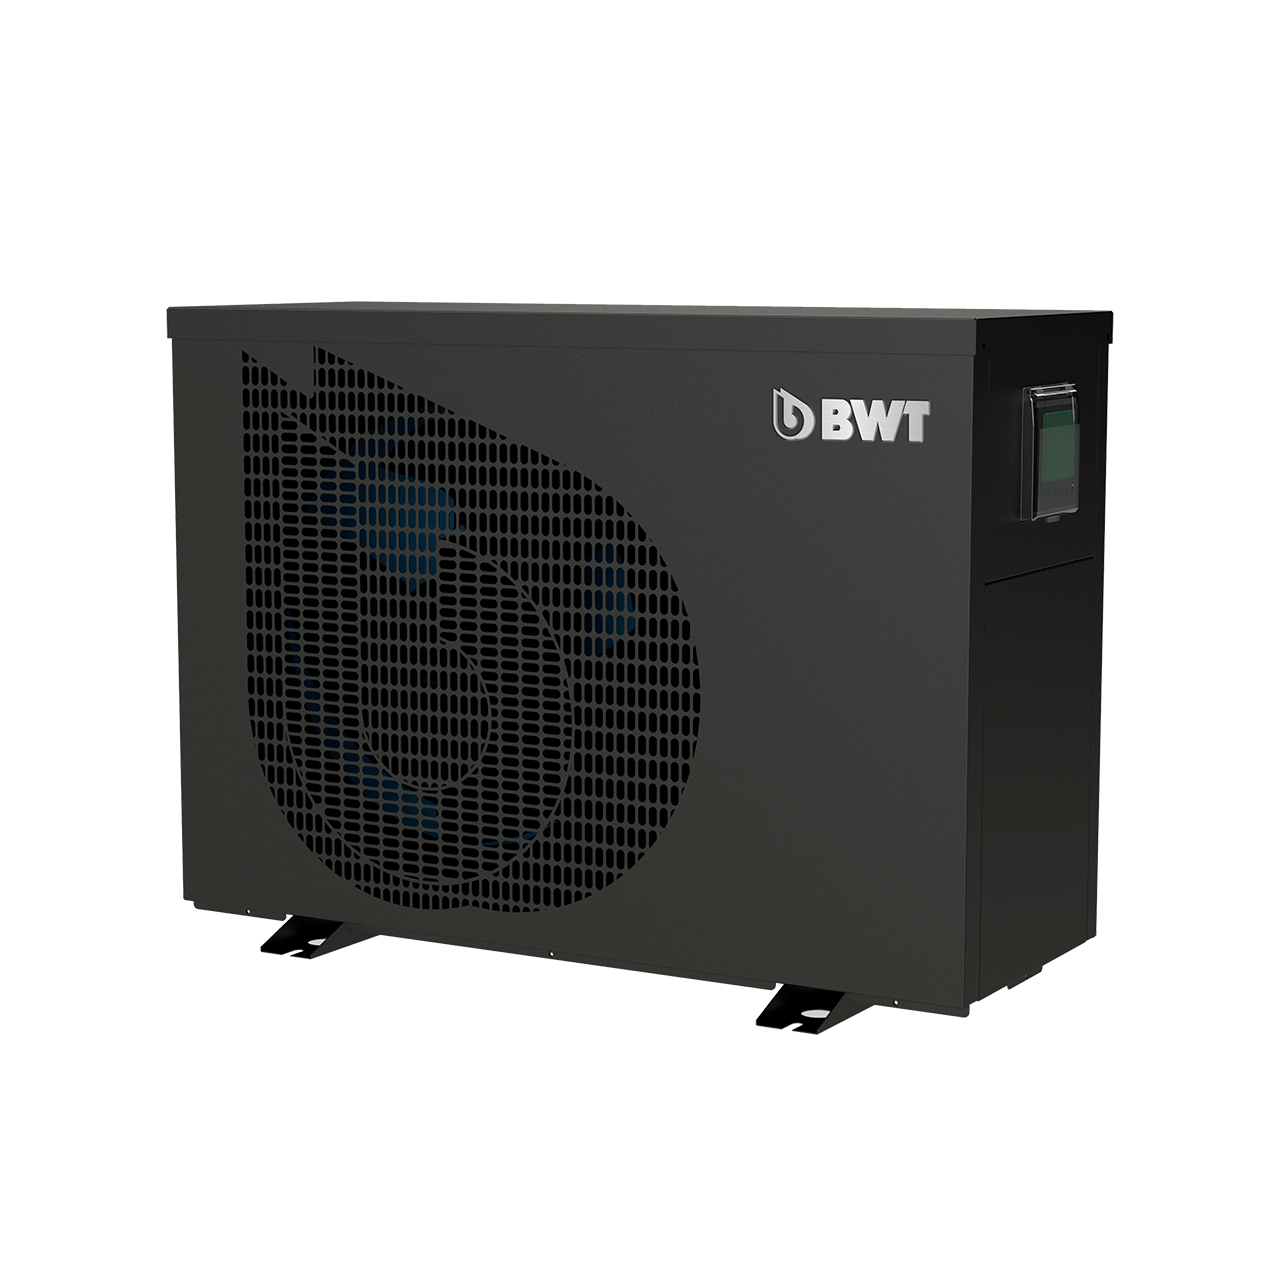 Poolheizung BWT Inverter Connect Wärmepumpe in schwarz von vorne